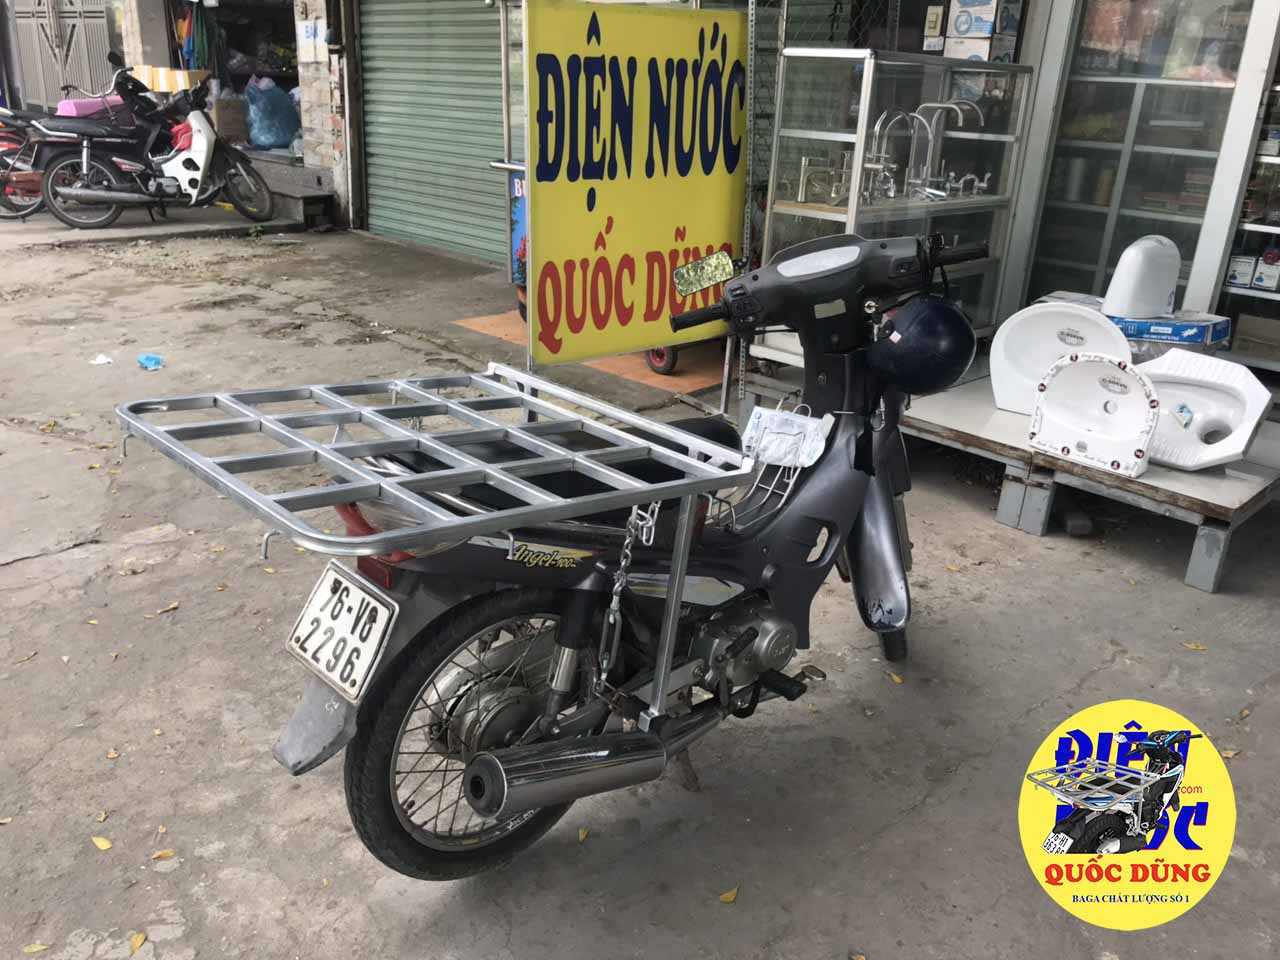 [ Baga ] giá Chở Hàng Xe máy SYM Angel - Baga Quốc Dũng